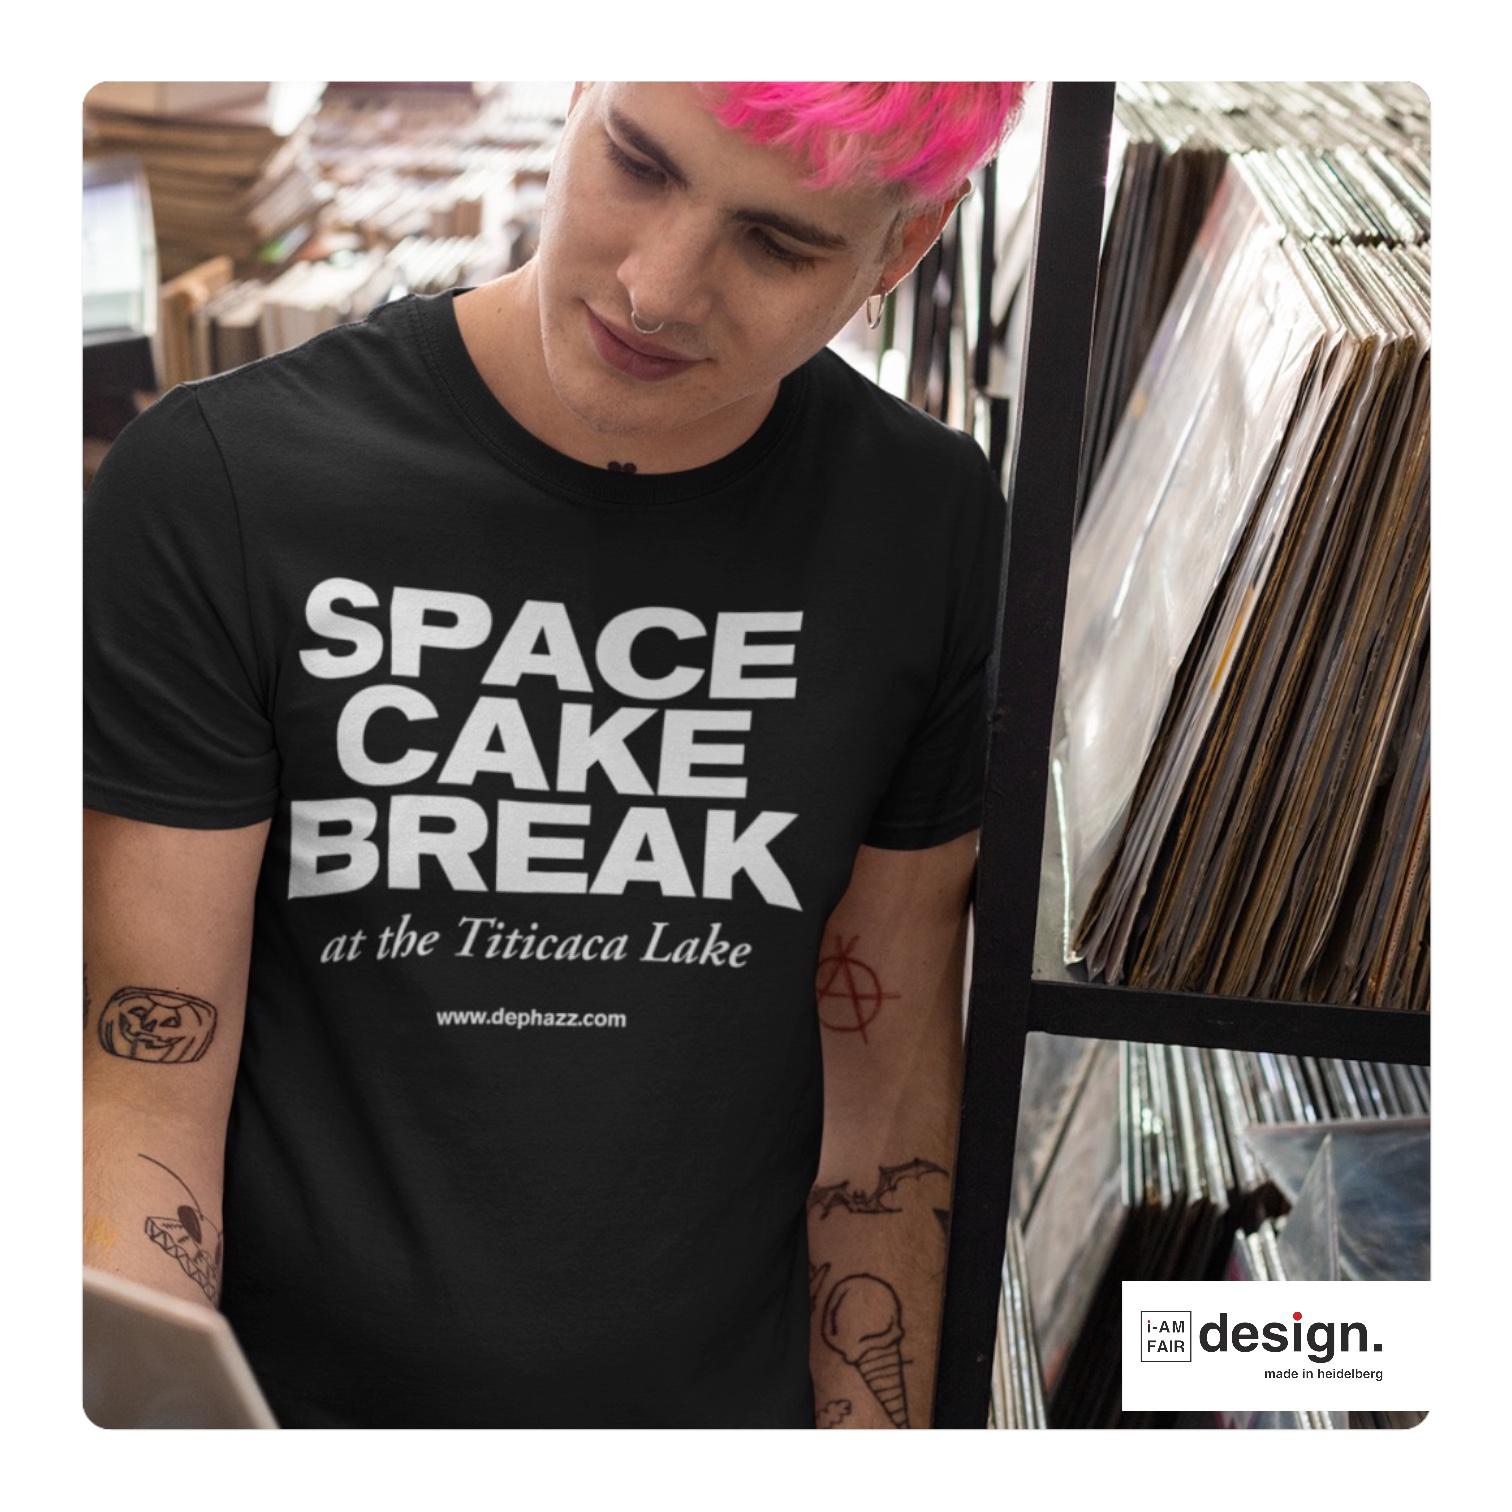 space cake breake - dePhazz